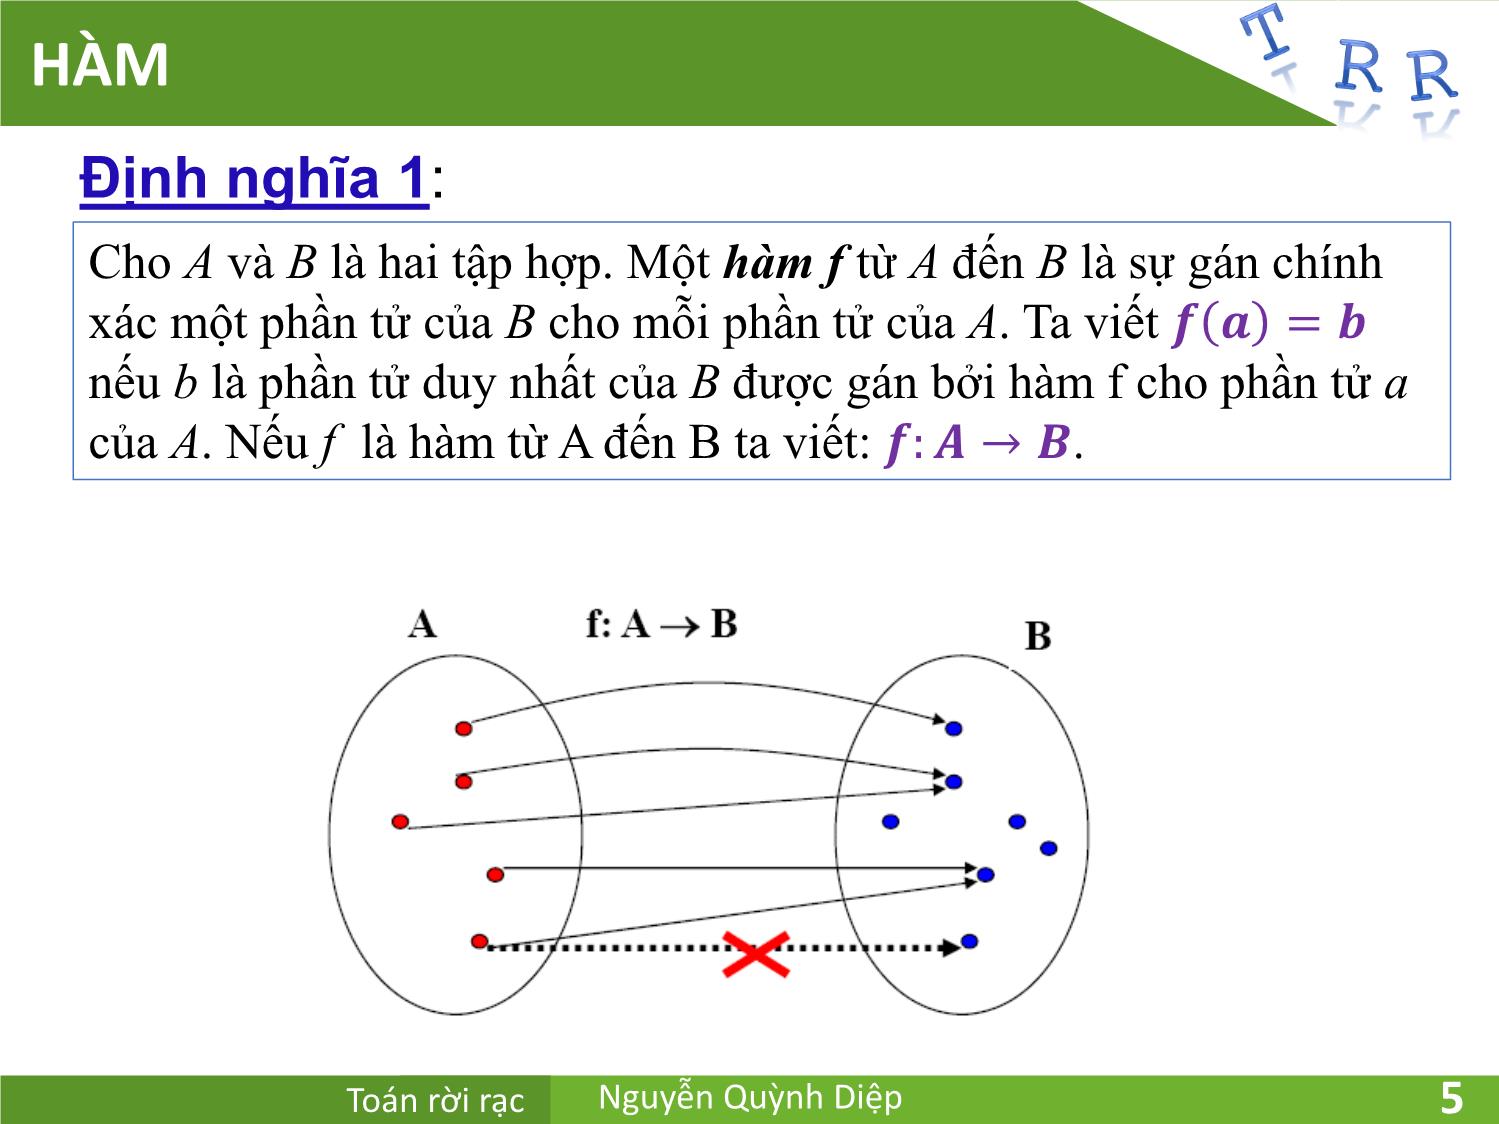 Bài giảng Toán rời rạc - Chương 2: Hàm và thuật toán - Nguyễn Quỳnh Diệp trang 5